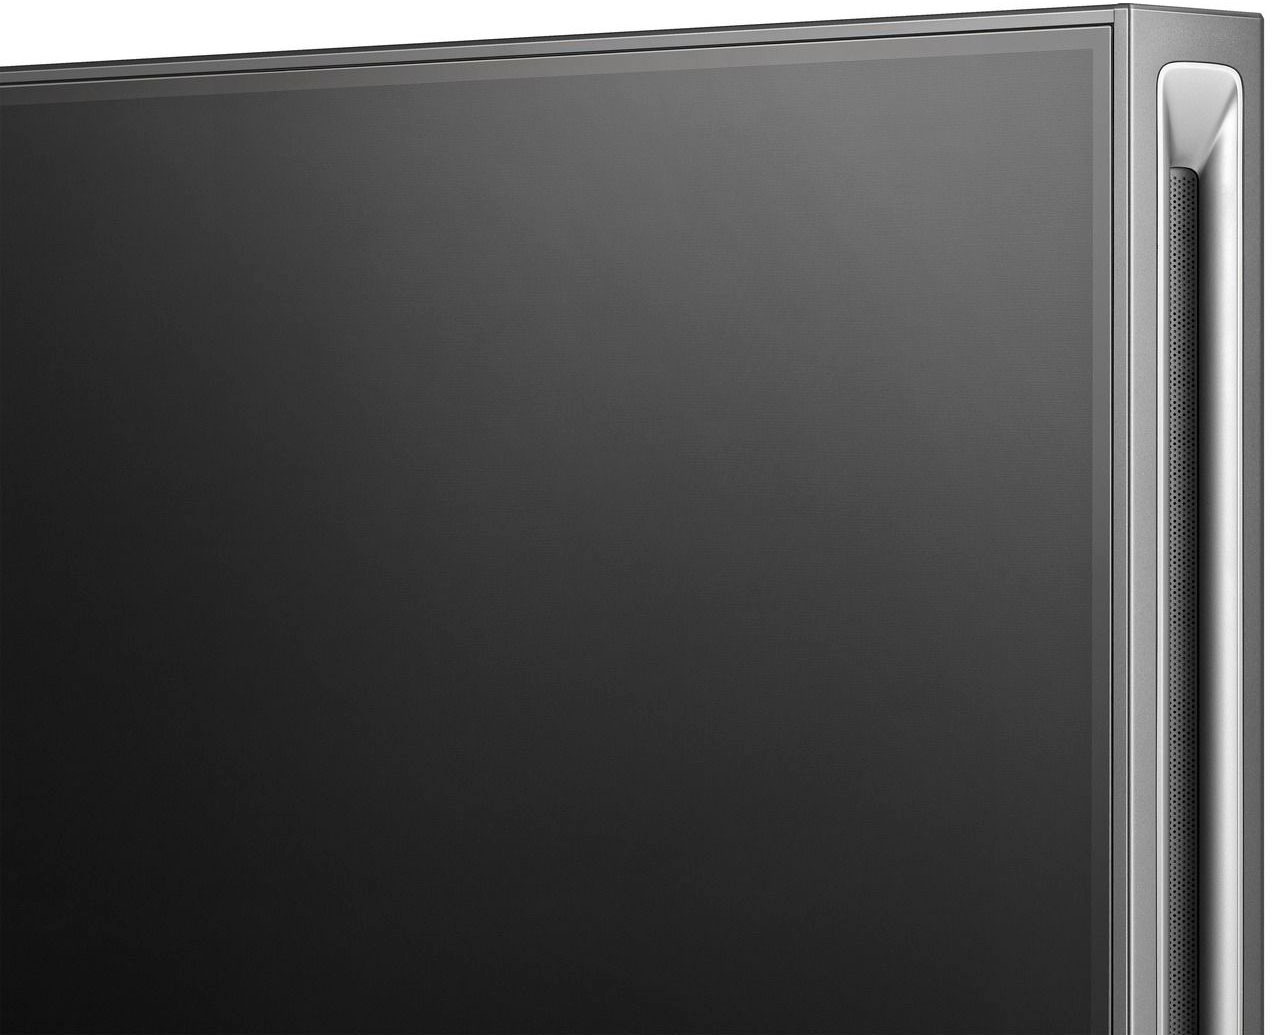 Hisense Mini-LED-Fernseher »85UXKQ«, 215 cm/85 Zoll, 4K Ultra HD, Smart-TV